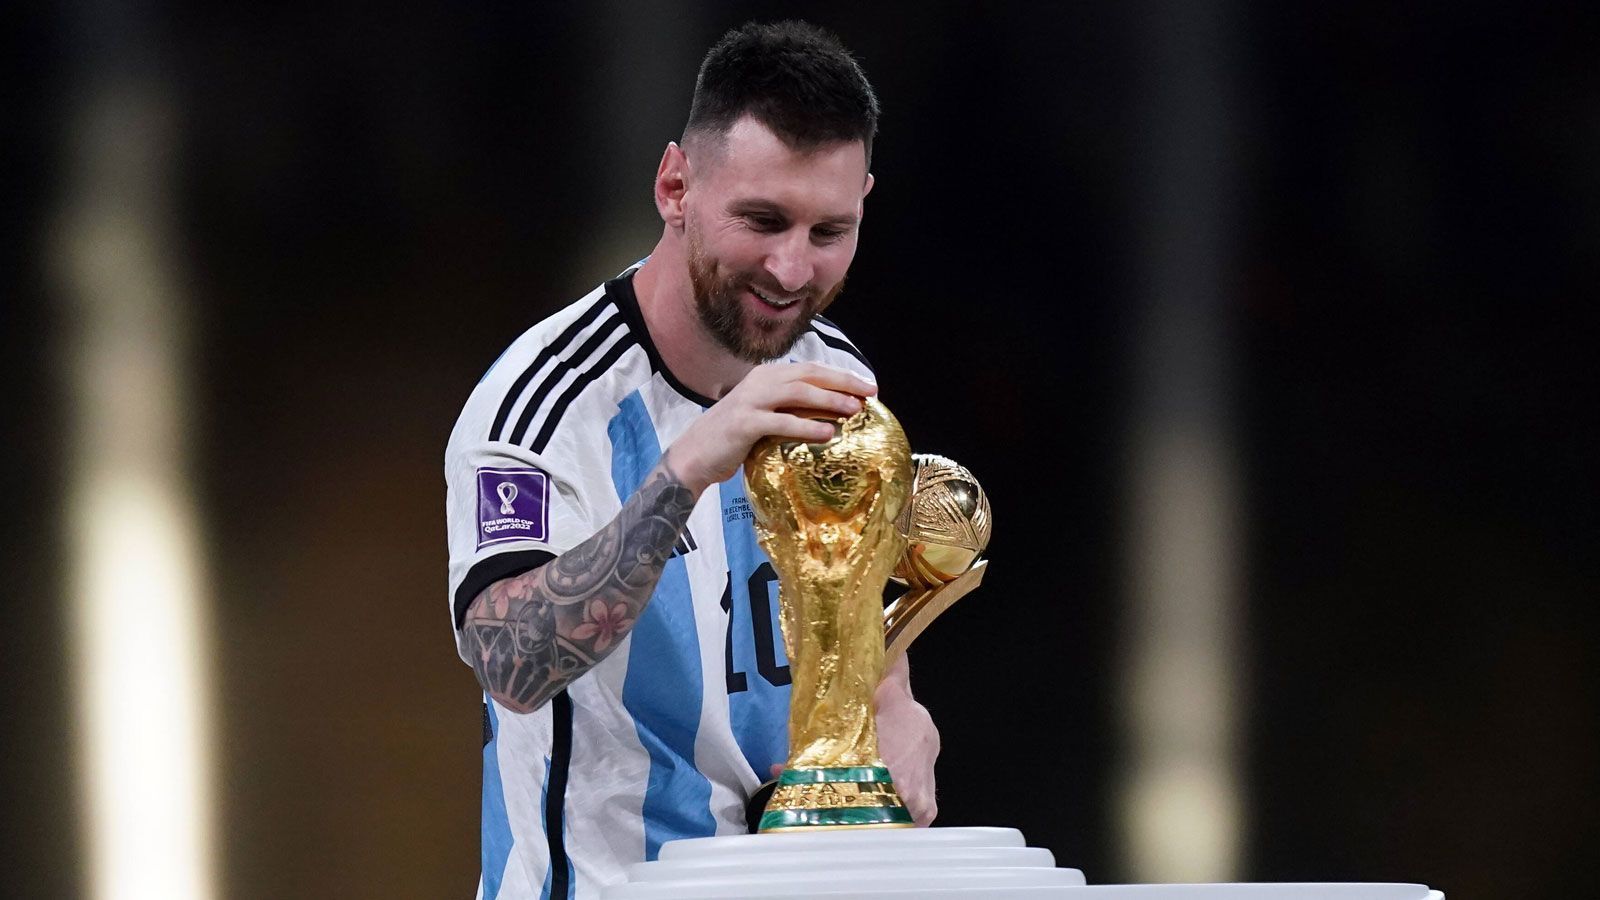 
                <strong>Man of the Match im Finale: Lionel Messi (Argentinien)</strong><br>
                Messi ergatterte obendrein auch den Award als Man of the Match. Weil die Verleihung nicht im Bild zu sehen war, sehen wir hier seine erste Annäherung an den WM-Pokal. 2018 war Antoine Griezmann ausgezeichnet worden.
              